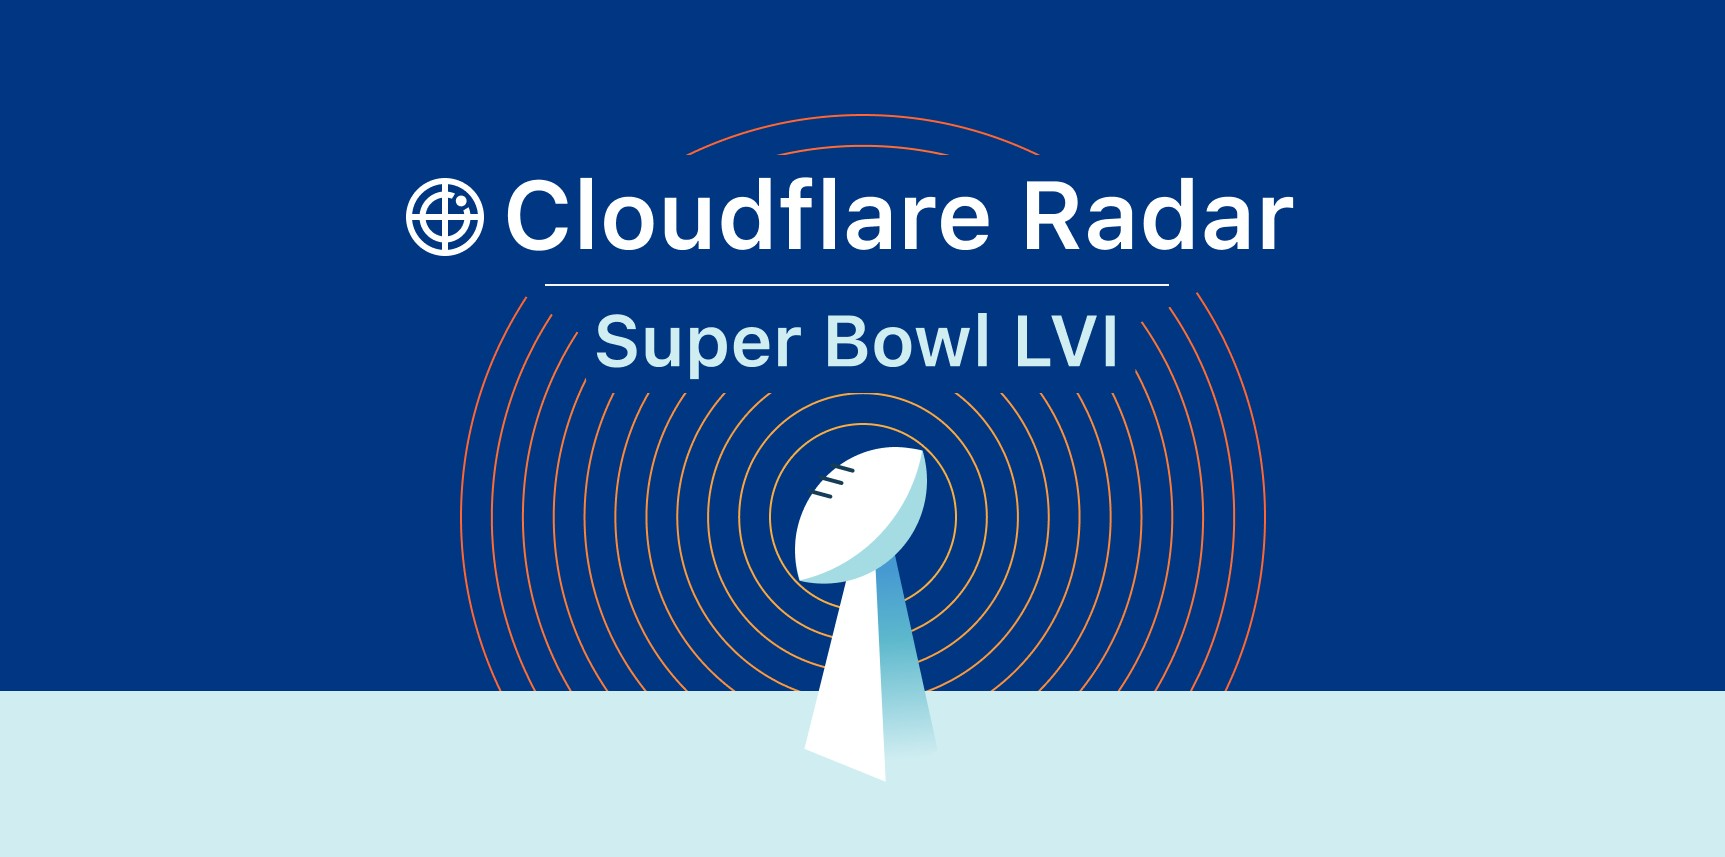 Super Bowl LVI Experience (Part 1 test)